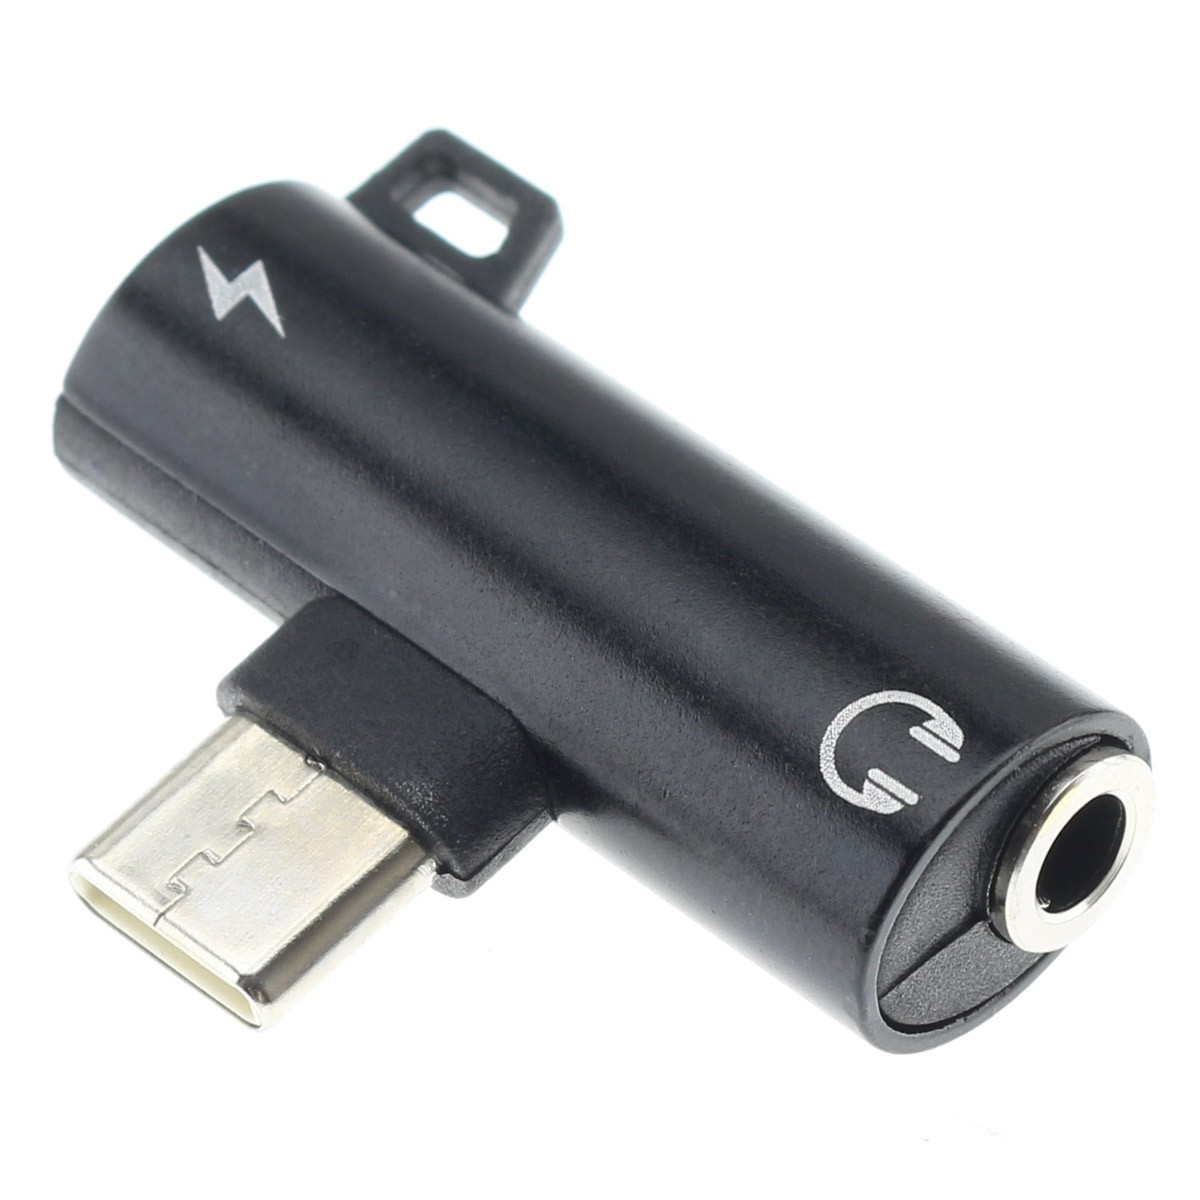 ADAPTADOR JACK TIPO C A USB MACHO 3.0 SAMPLES AJ811